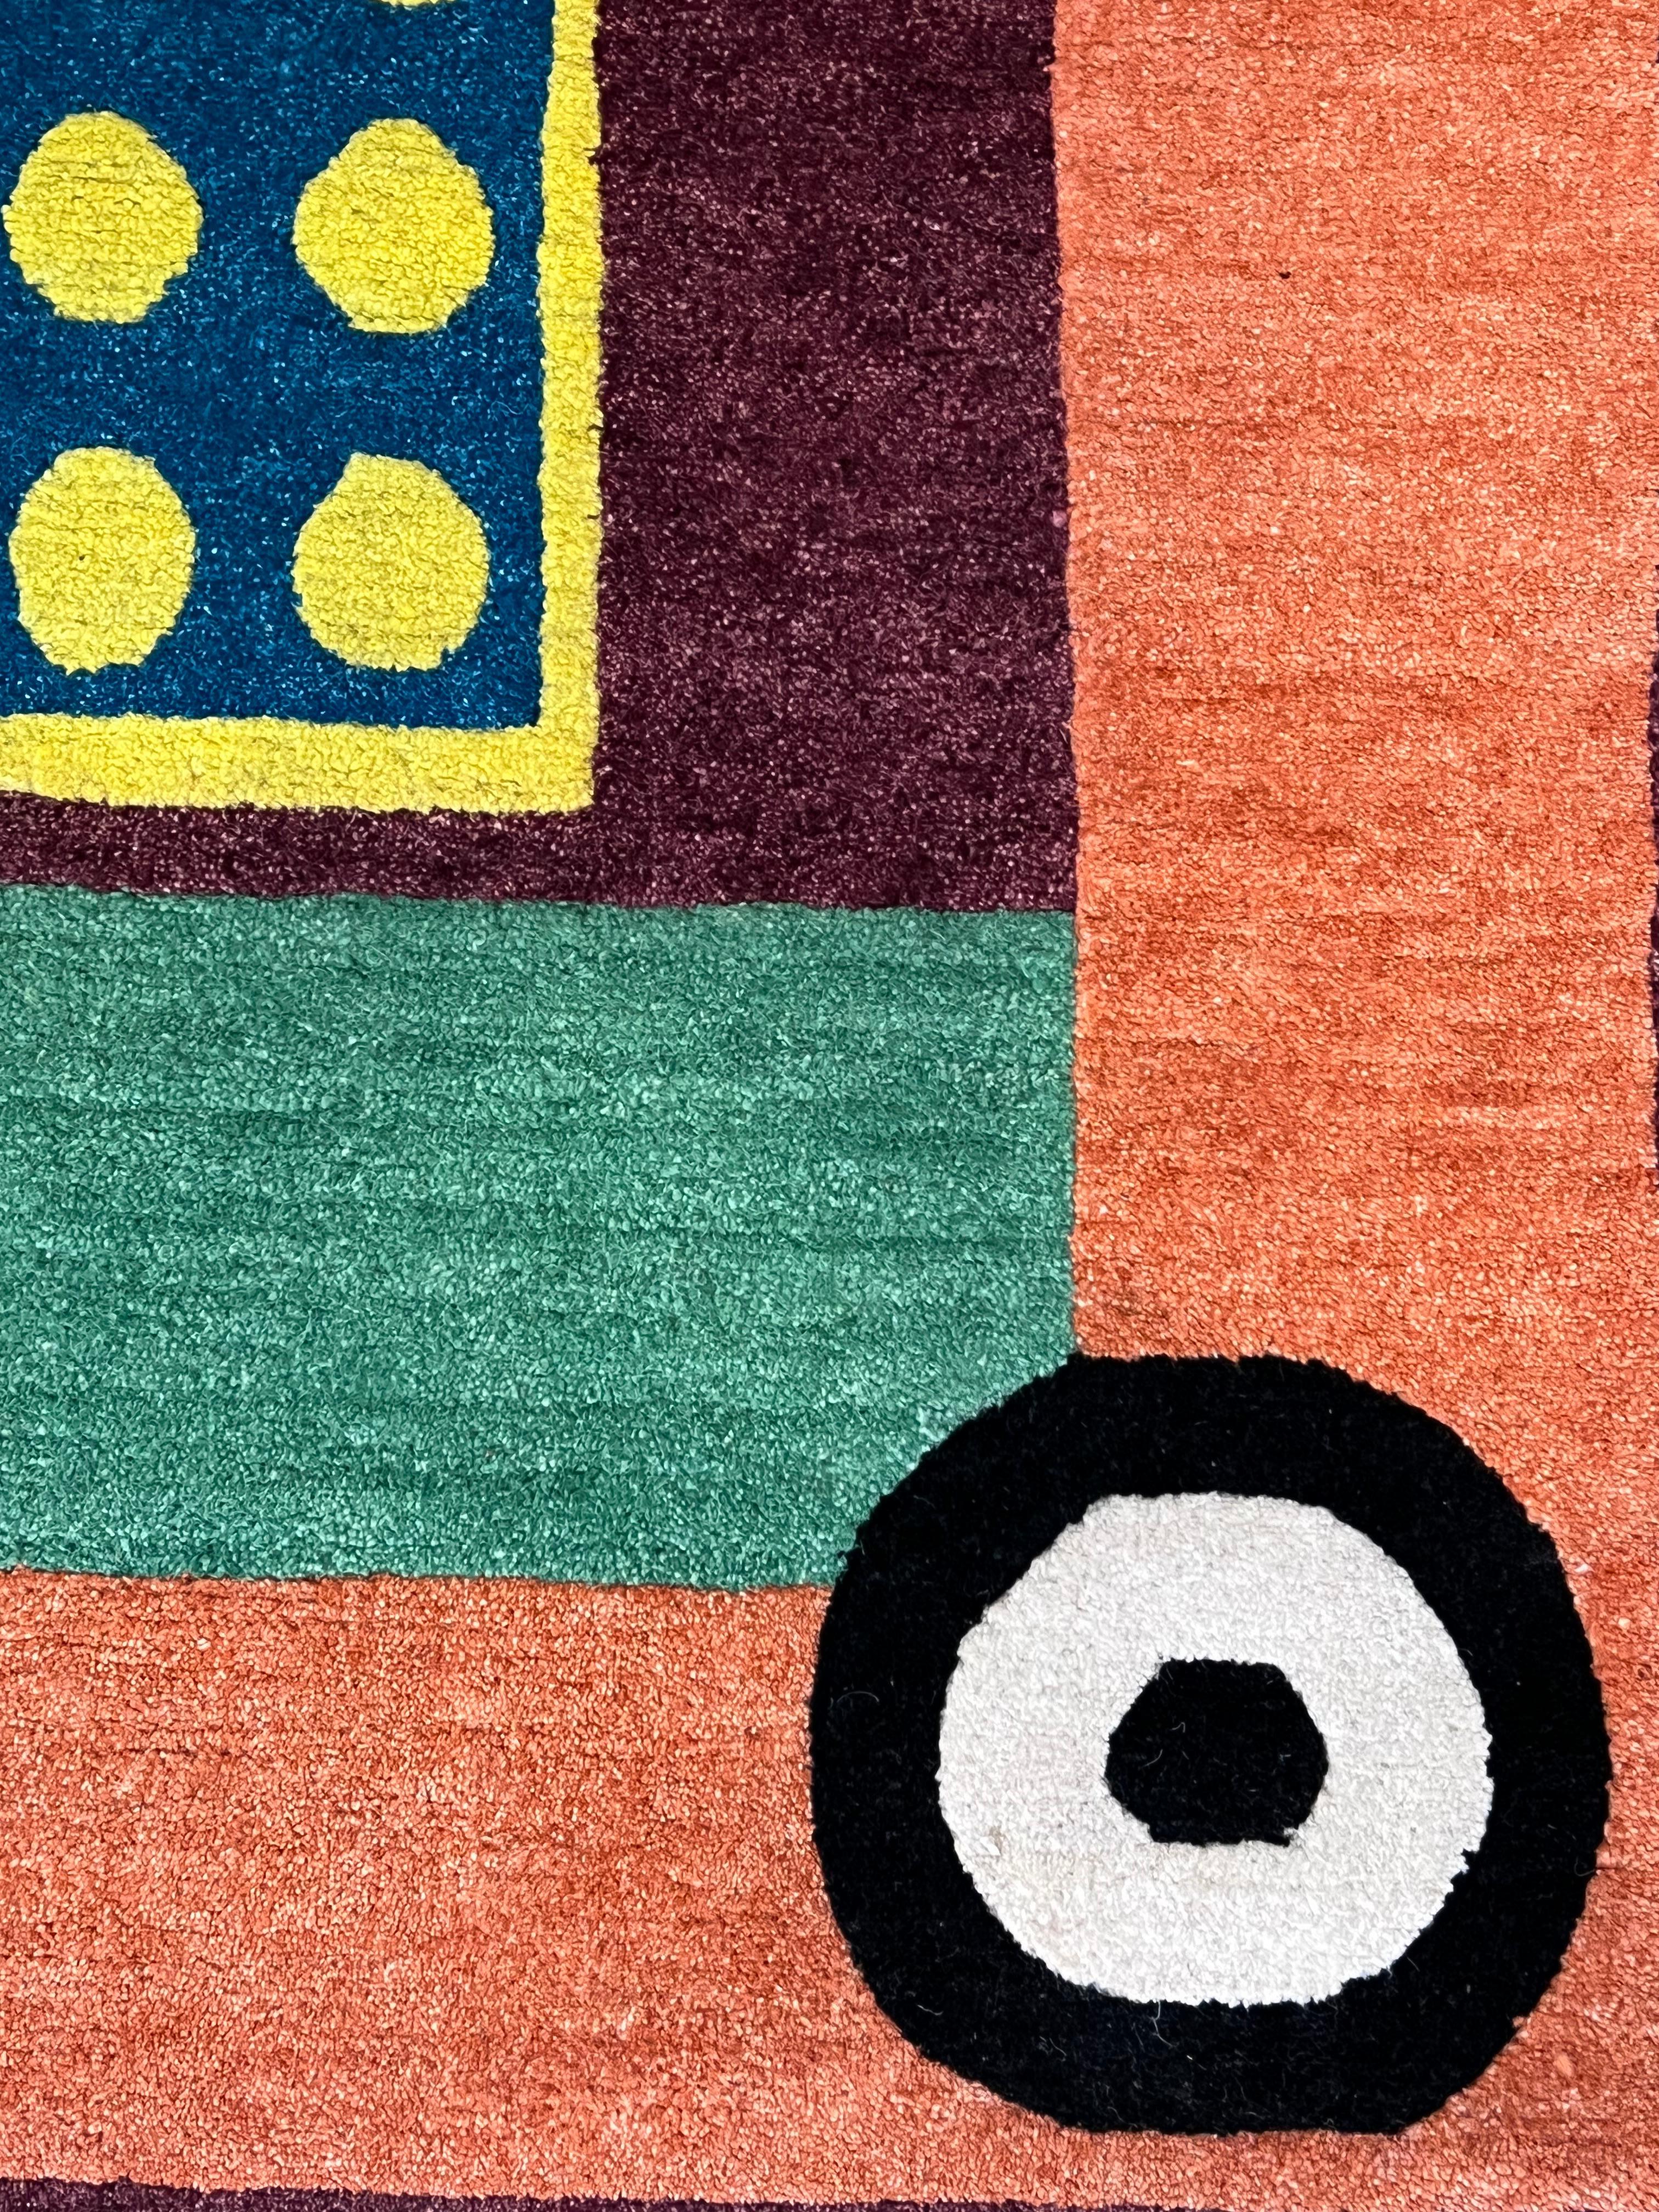 Handgeknüpfter Teppich in Nepal, herausgegeben von Galleria Post Desig in Mailand und entworfen von Nathalie Du Pasquier. Nummer 12 einer limitierten Produktion von 36 Stück, die im Katalog Sammlung von Teppichen 